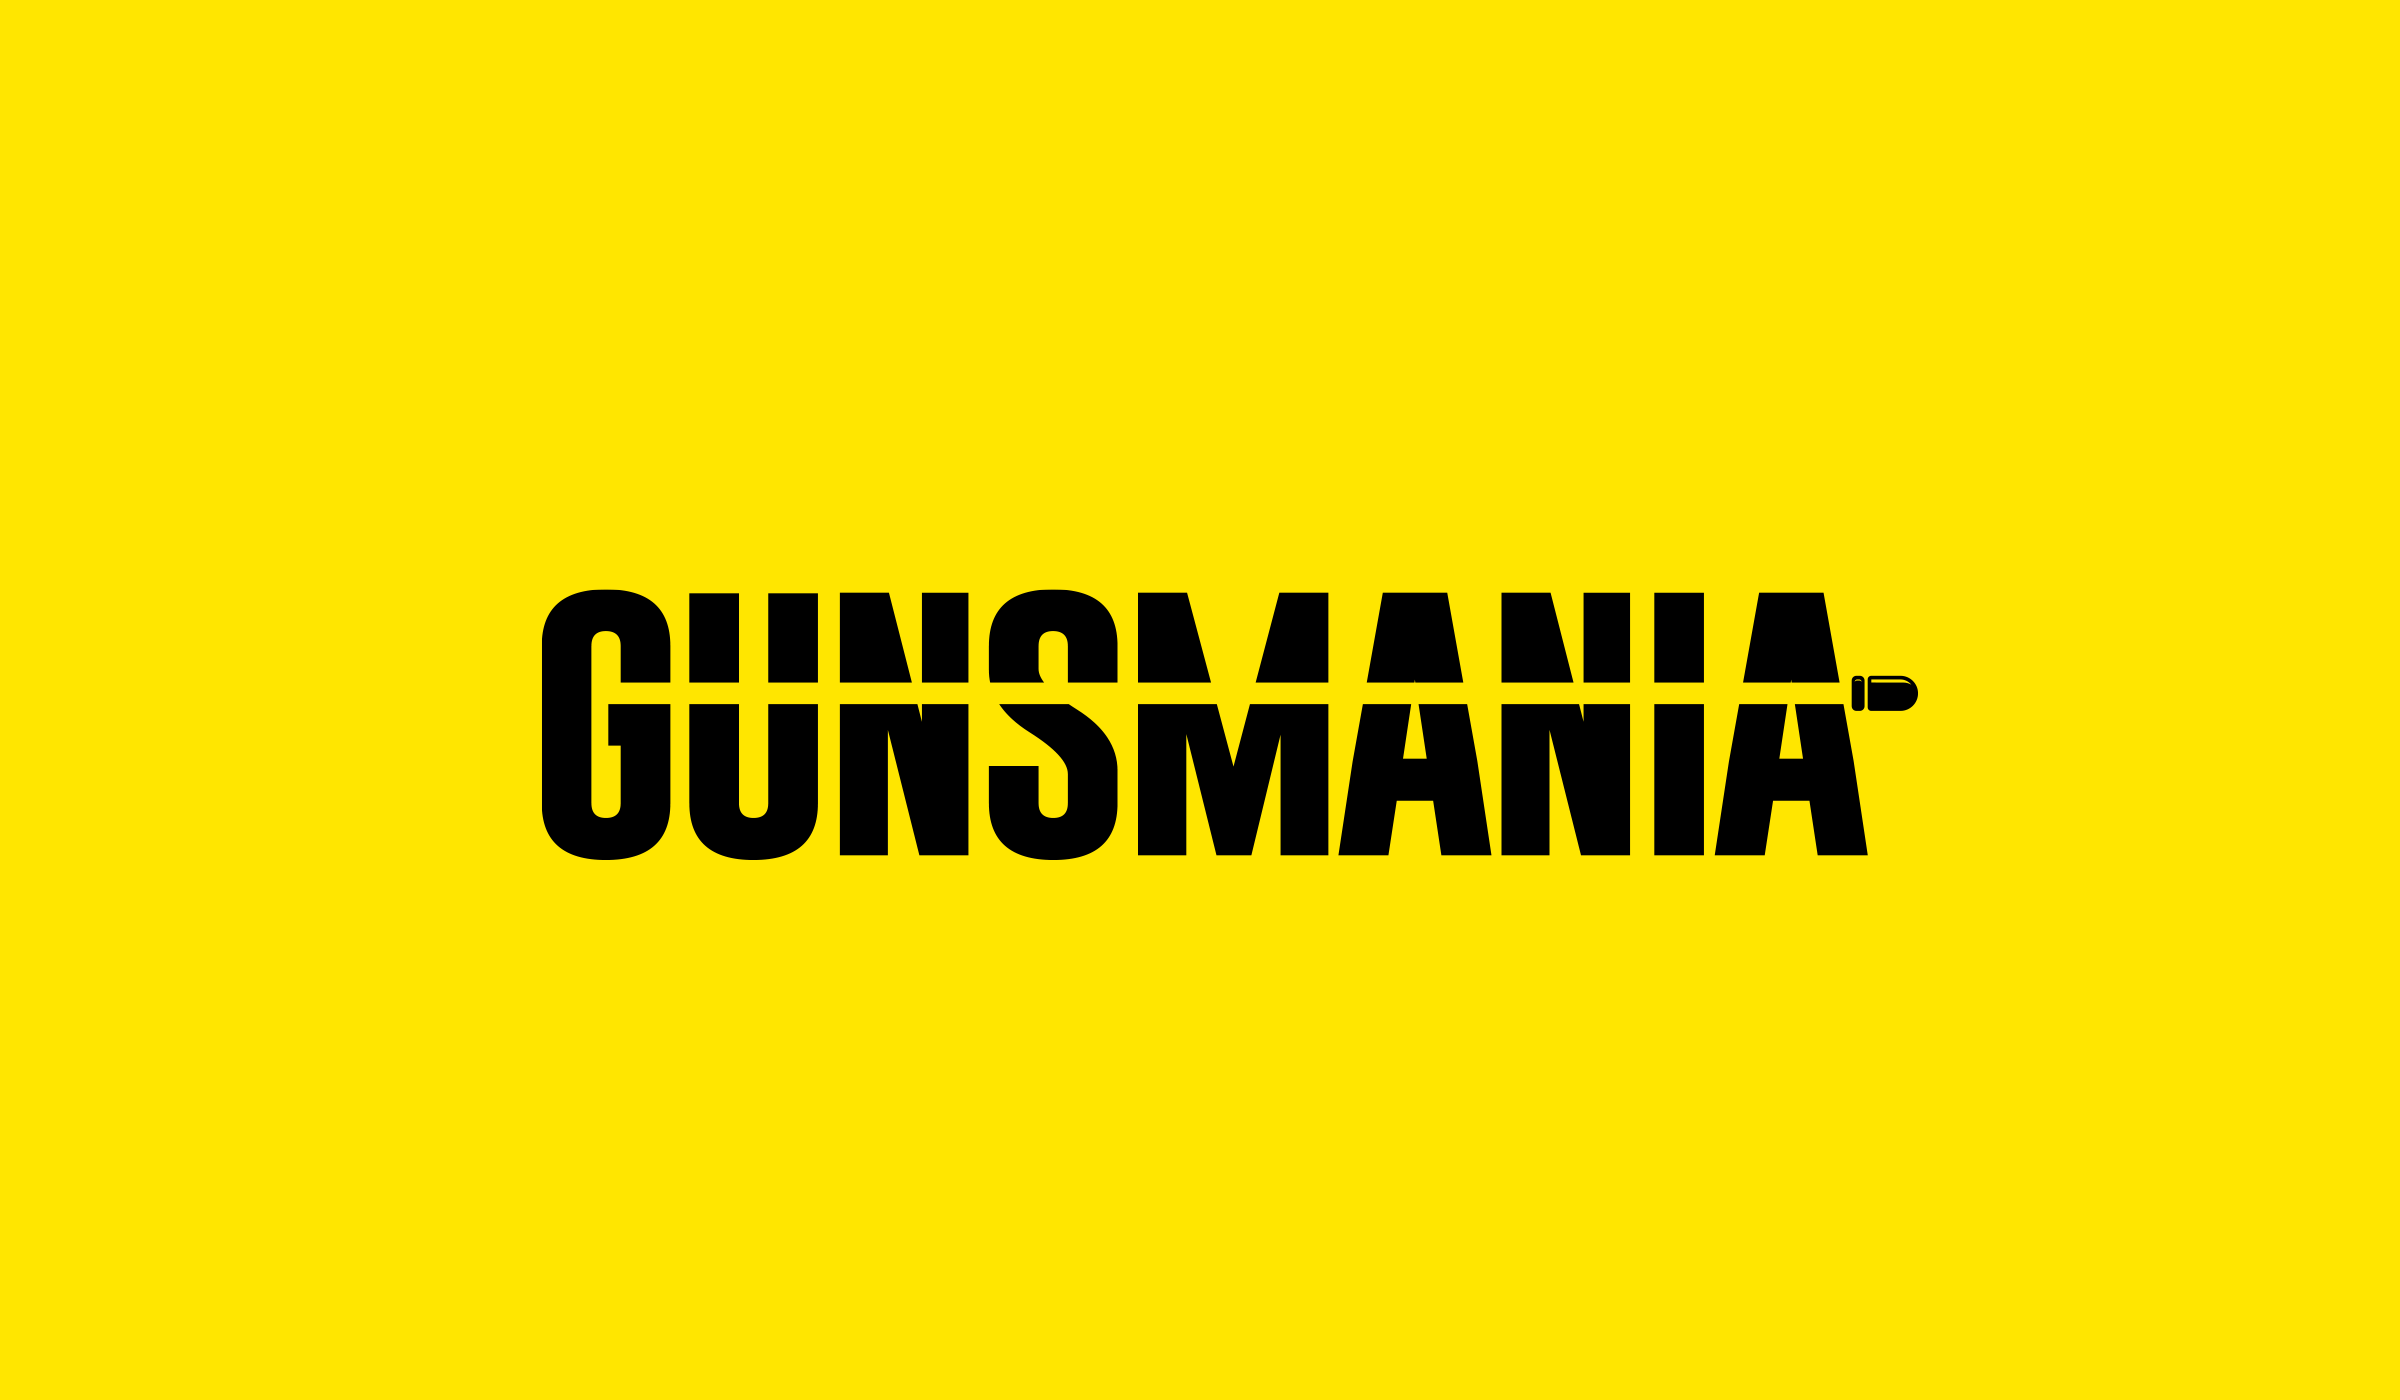 gunsmania.com